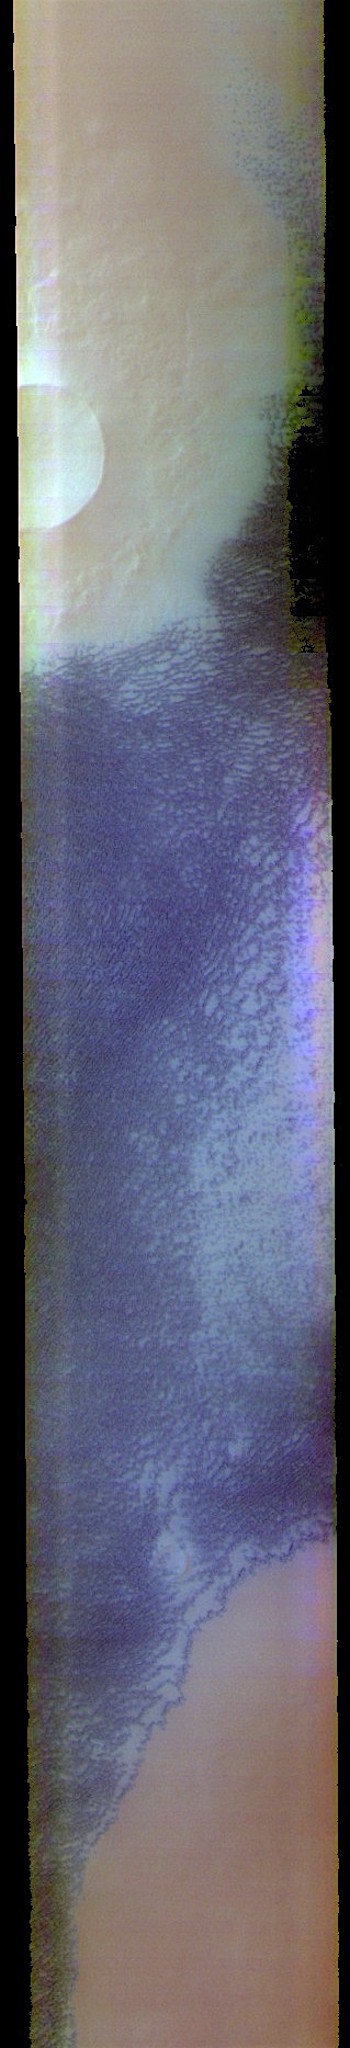 North polar dunes in false color (THEMIS_IOTD_20180912)